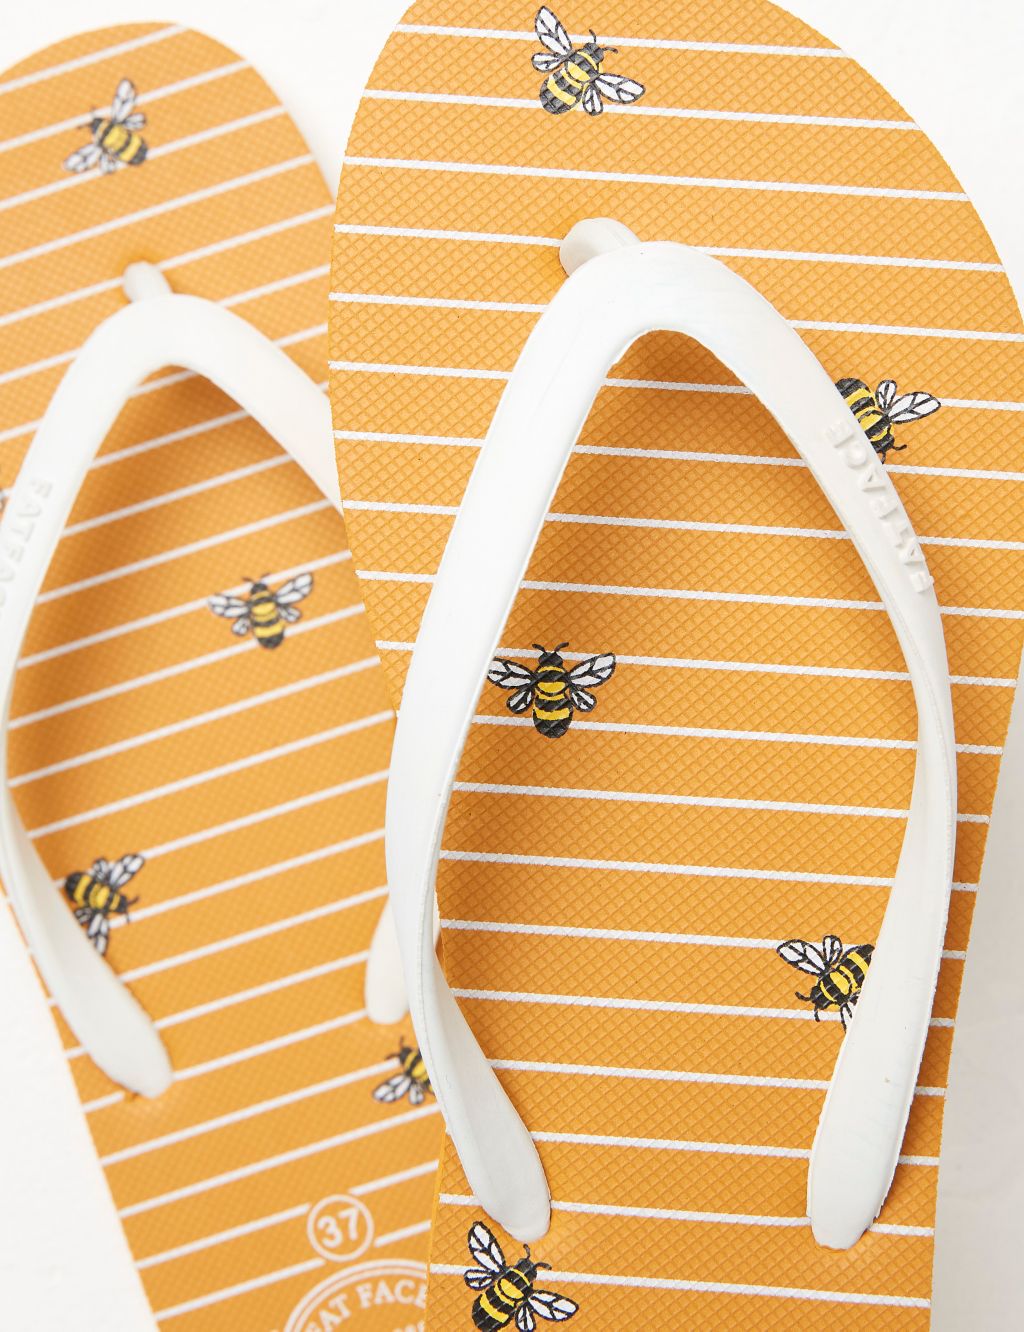 Bee Print Flip Flops image 2